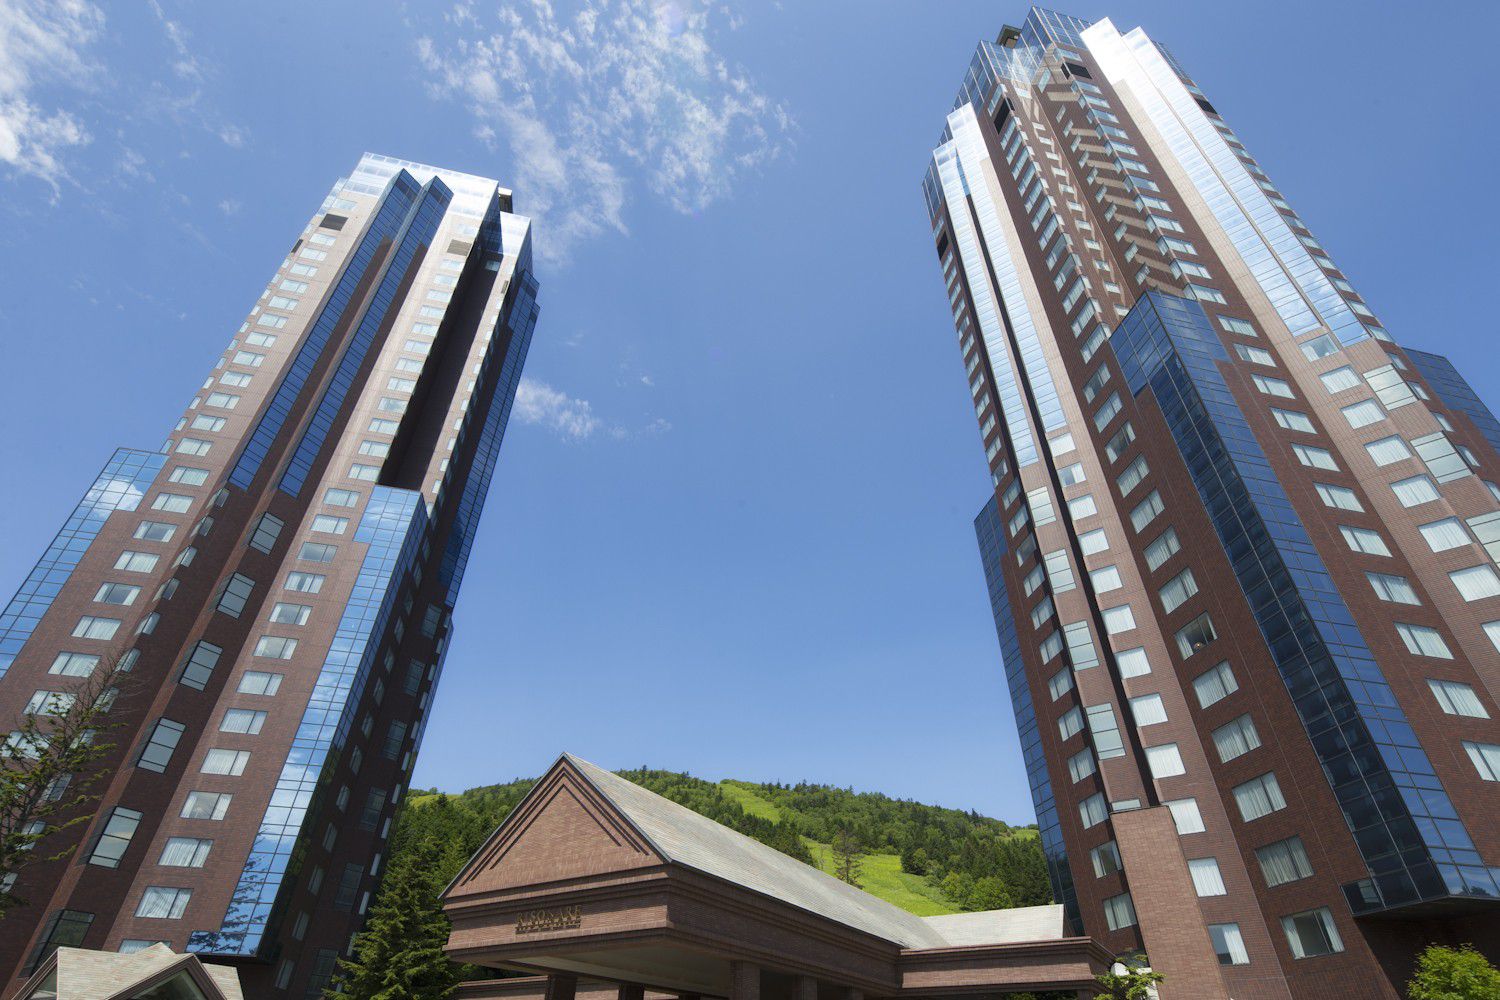 北海道トマム「星野リゾートホテル トマム」特集！日高山脈の懐にそびえるツインタワーの魅力